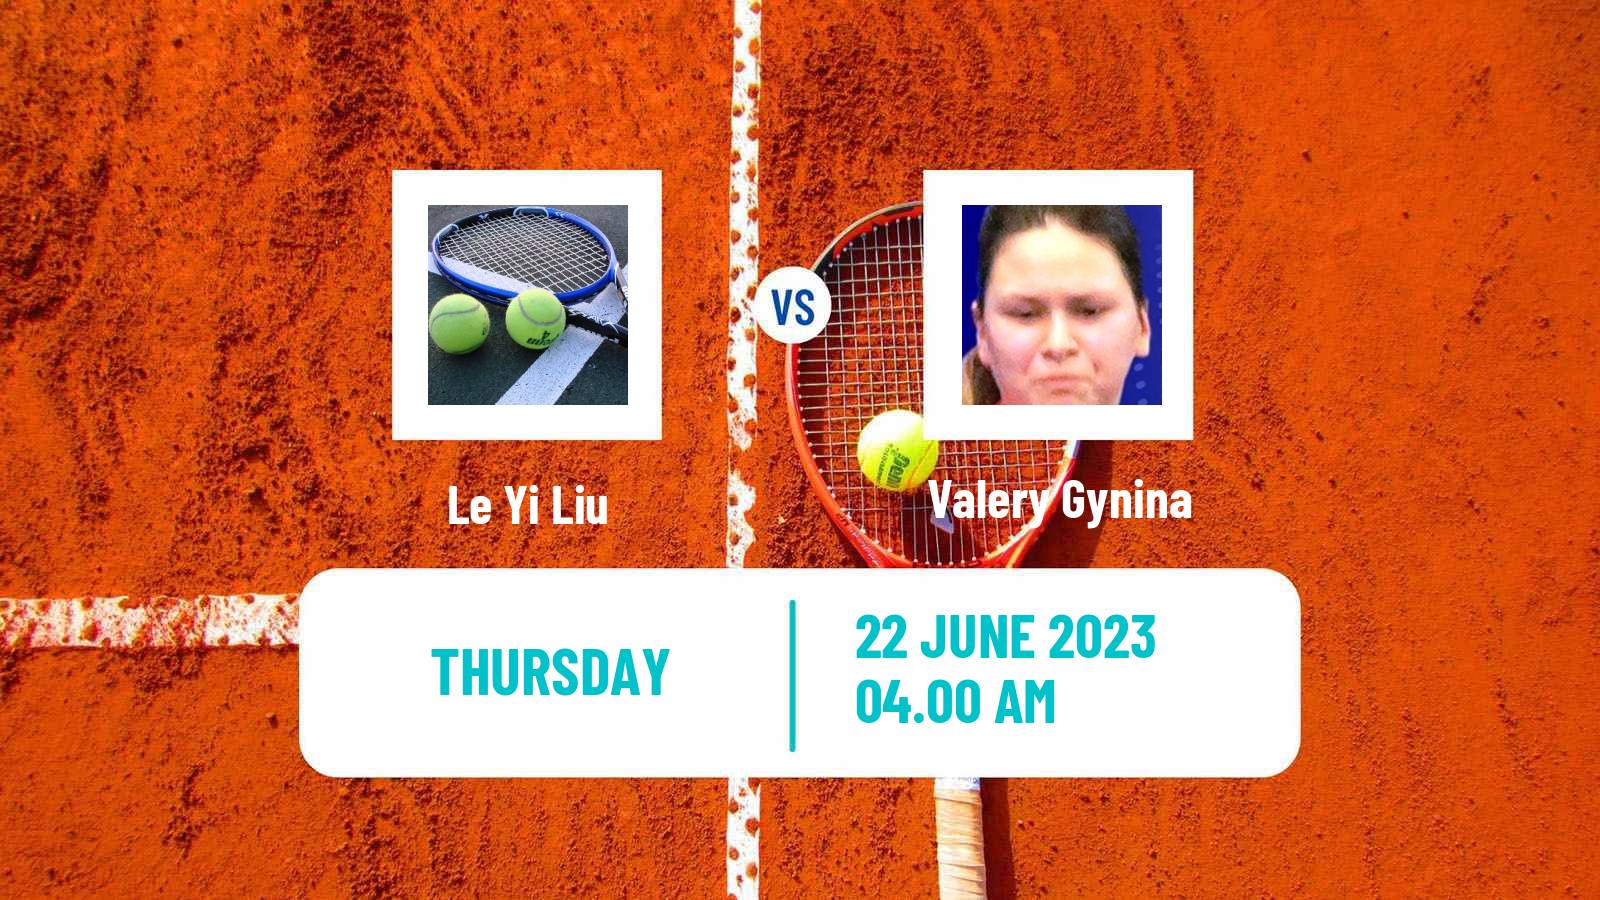 Tennis ITF W15 Tianjin 2 Women Le Yi Liu - Valery Gynina